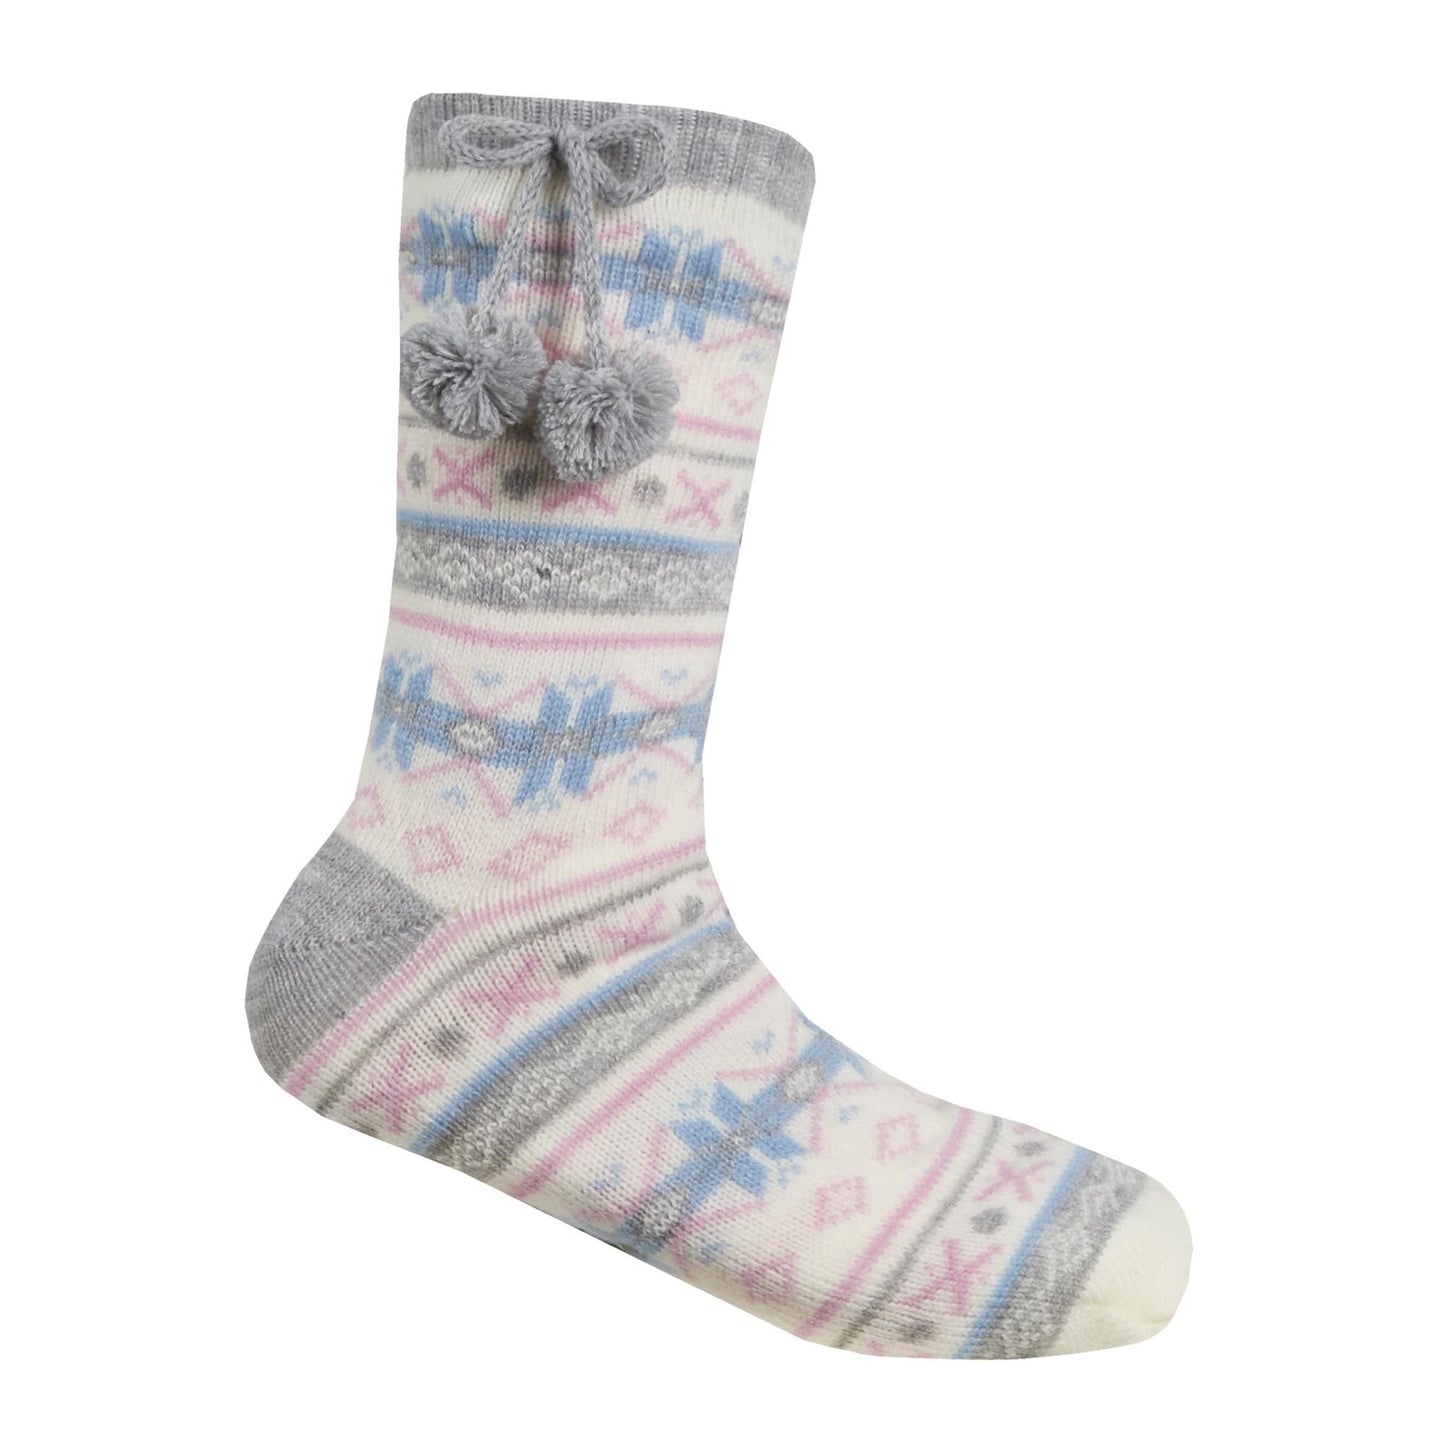 Ladies Knitted Christmas Design Slipper Socks